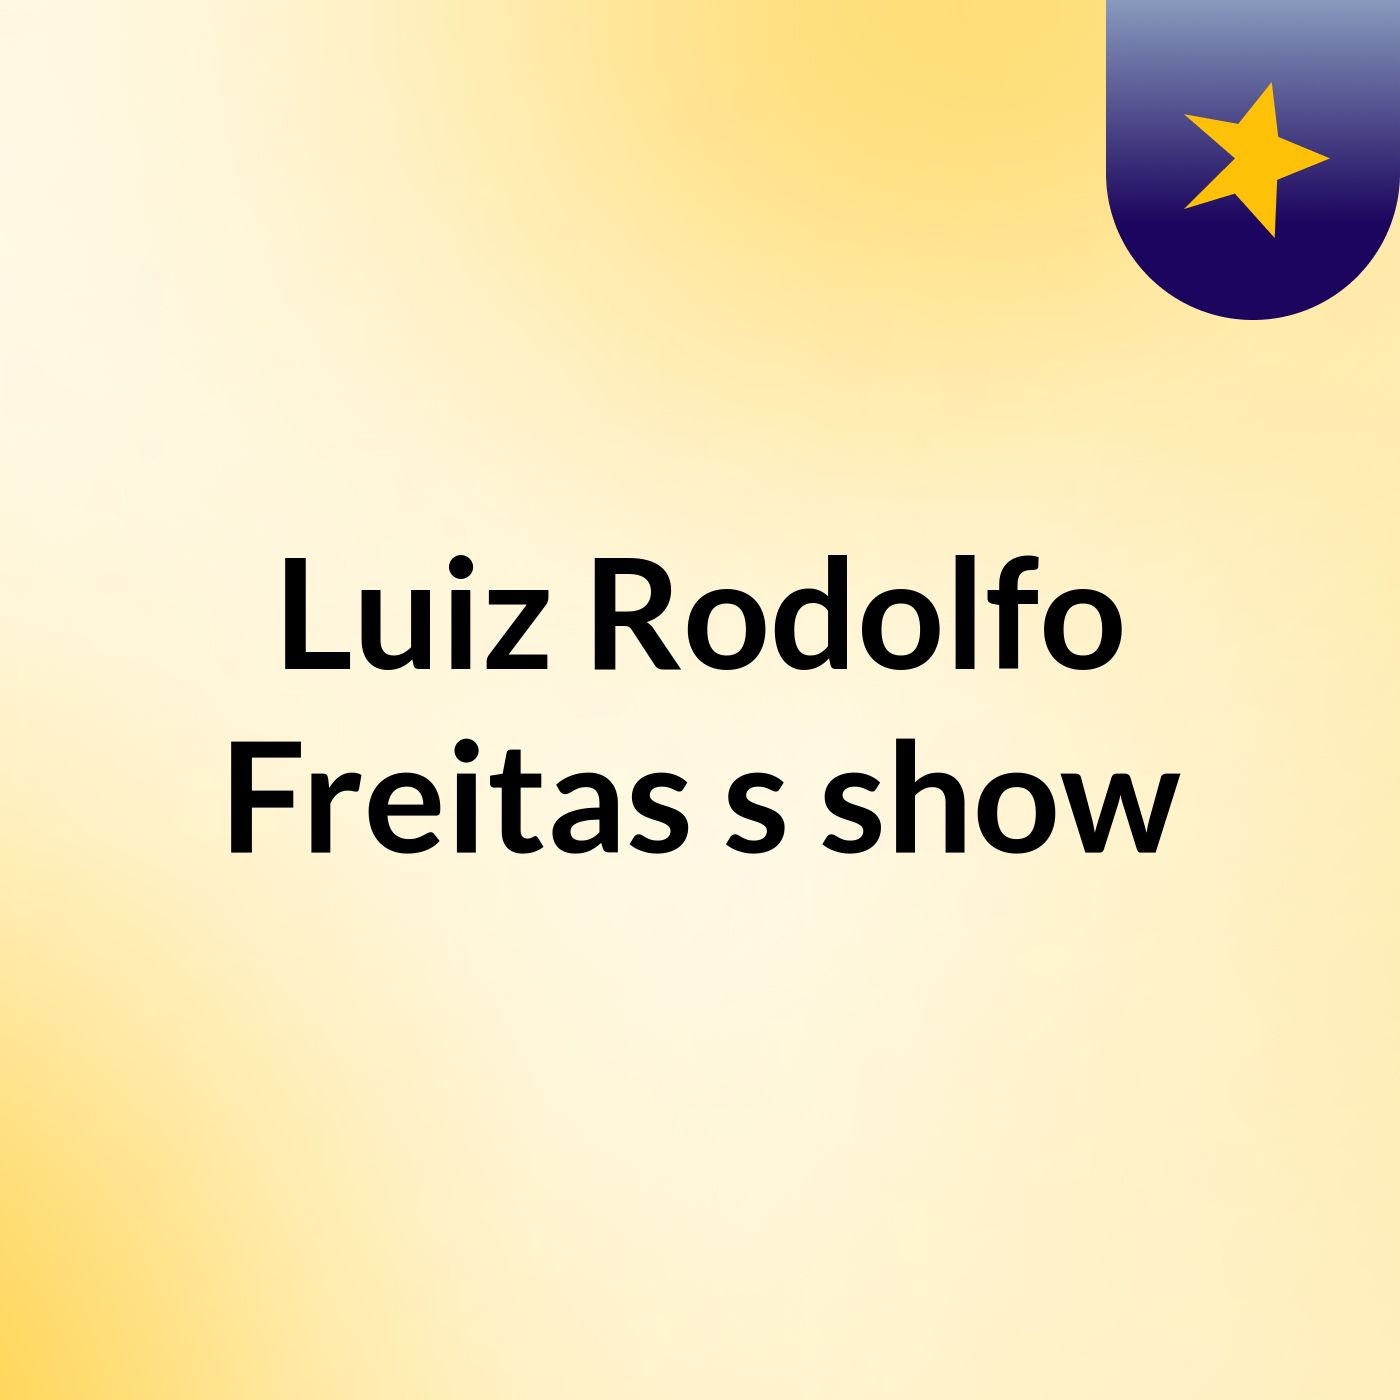 Luiz Rodolfo Freitas's show